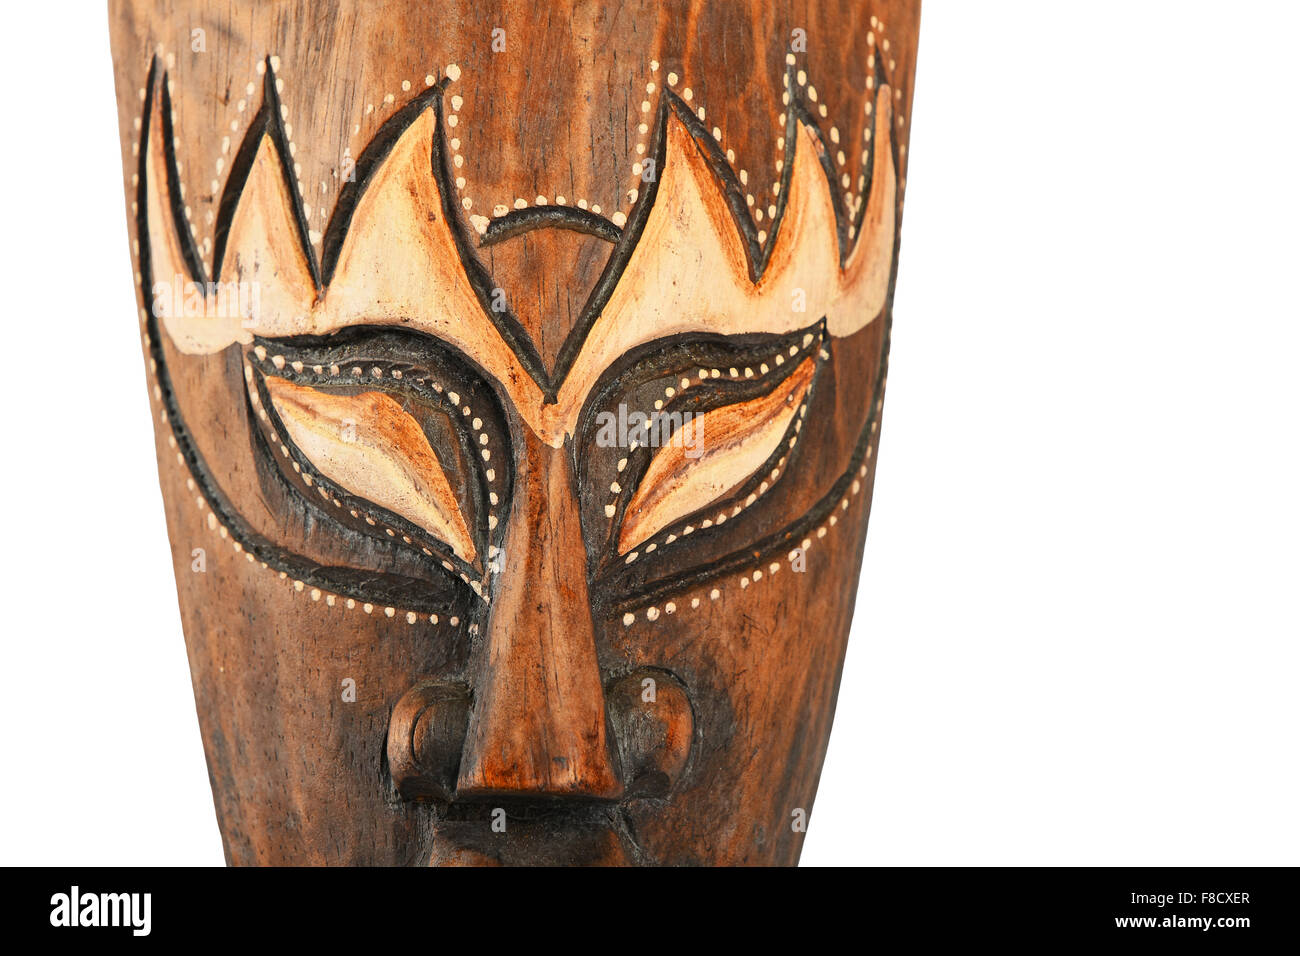 En bois traditionnel asiatique peint en brun masque à visage humain ou démon de close up isolated on white Banque D'Images